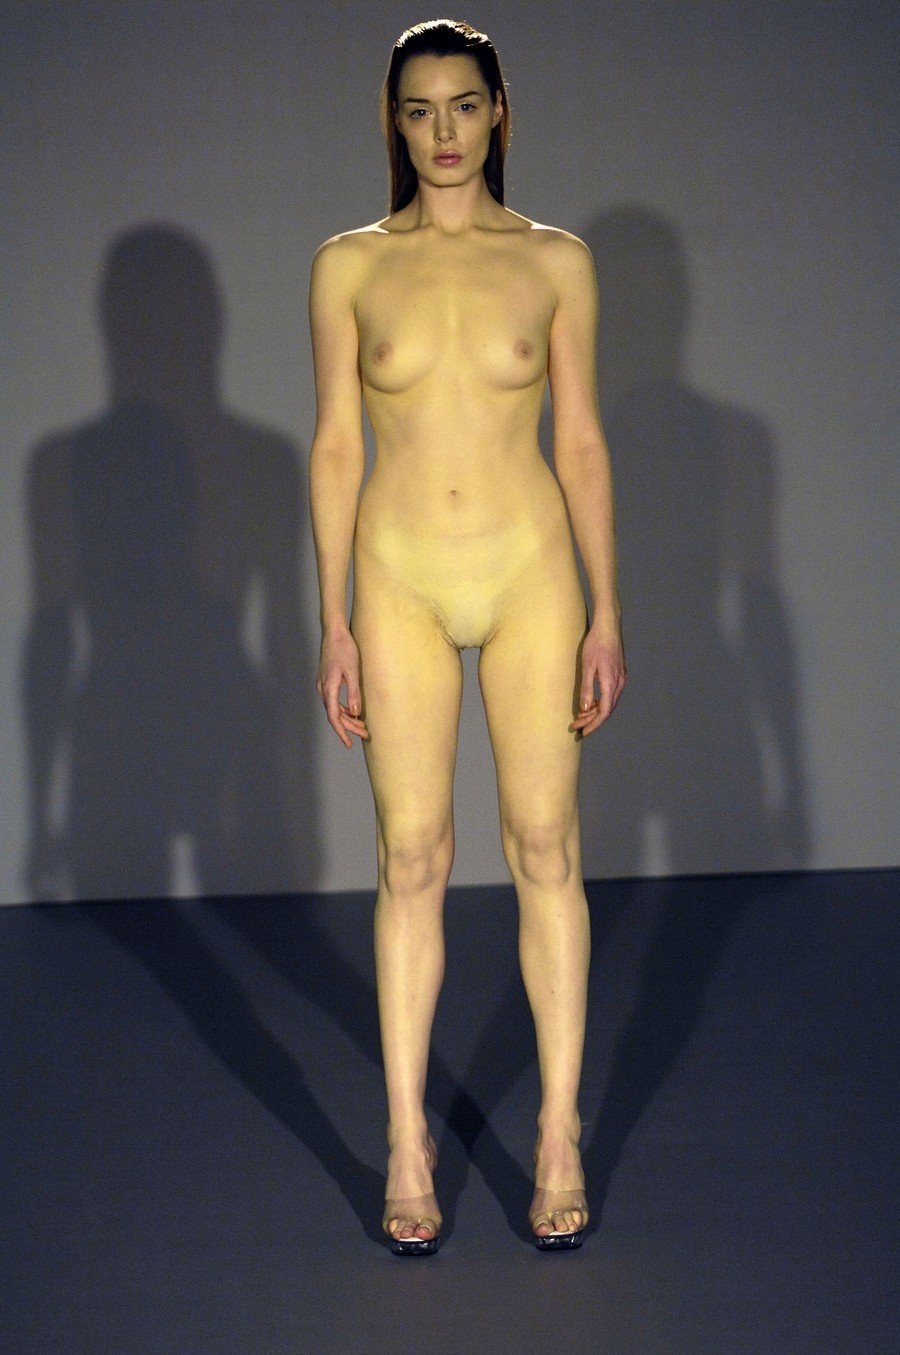 Показ мод, на котором модели демонстрируют аксессуары без одежды